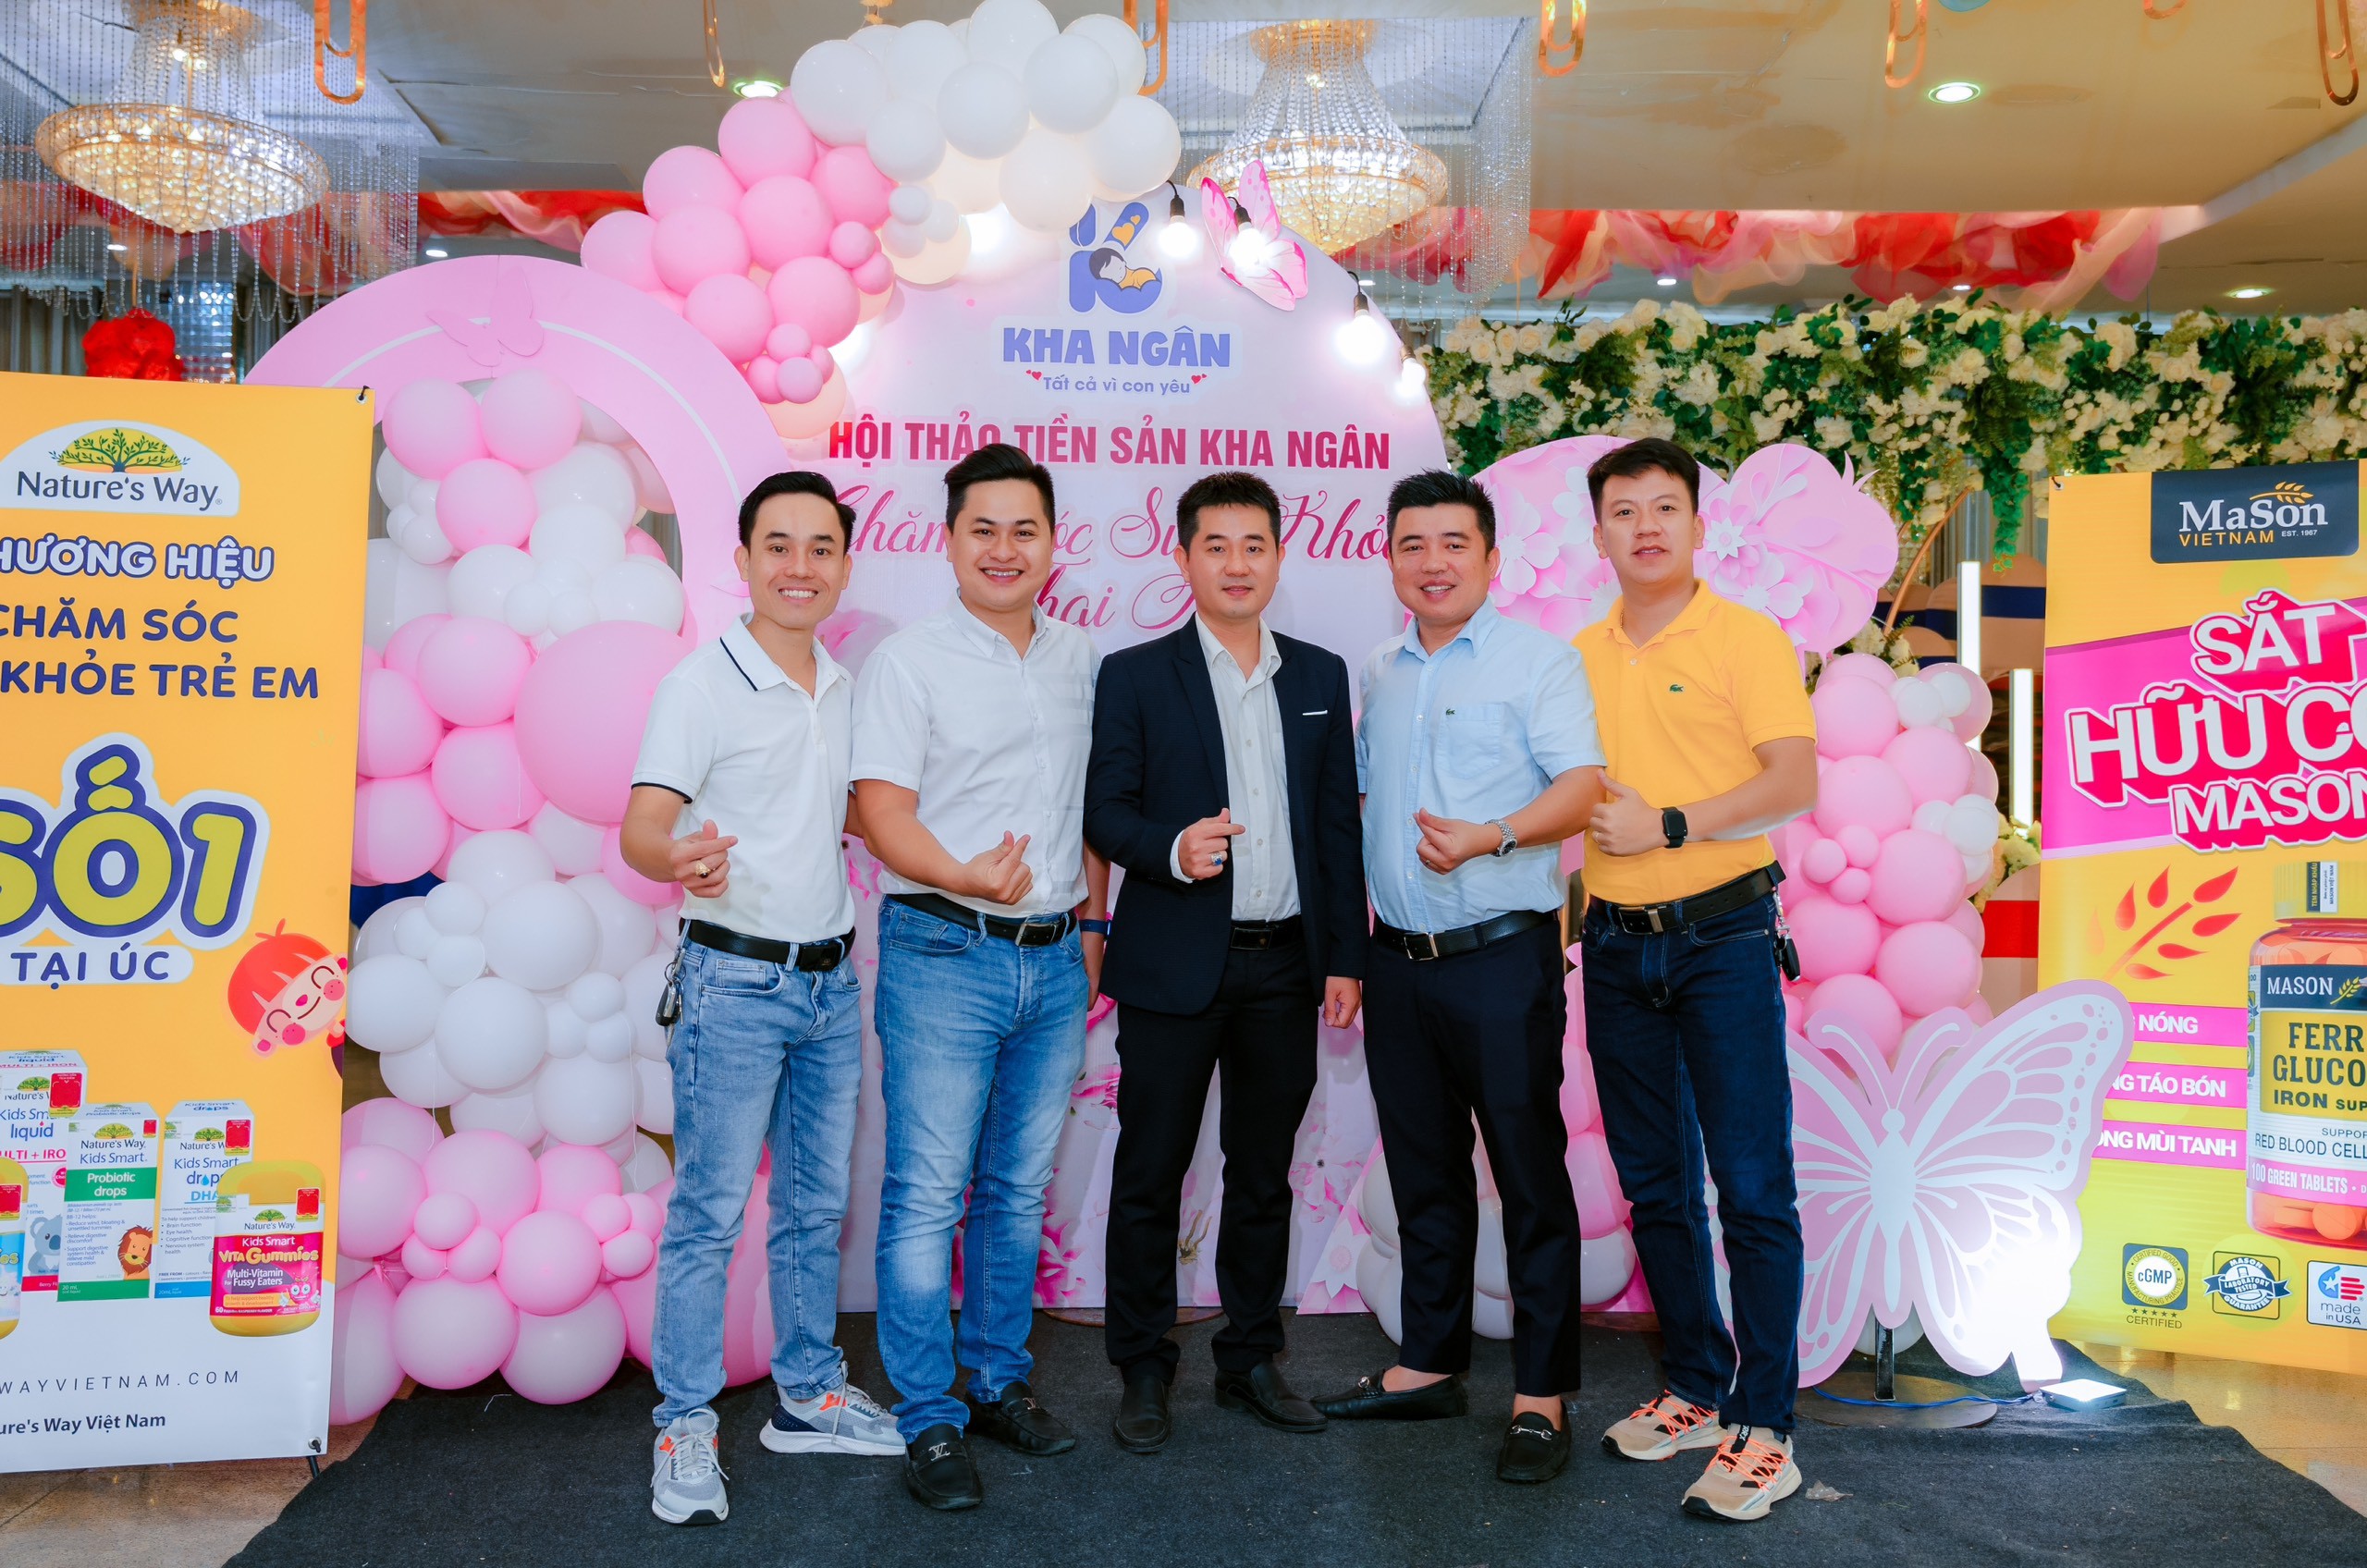 Chị Trần Nữ Bích Ngân và anh Nguyễn Hà Minh Kha (đứng giữa) – Chủ hệ thống cửa hàng sữa Kha Ngân chụp ảnh lưu niệm cùng đại diện Megasun Group